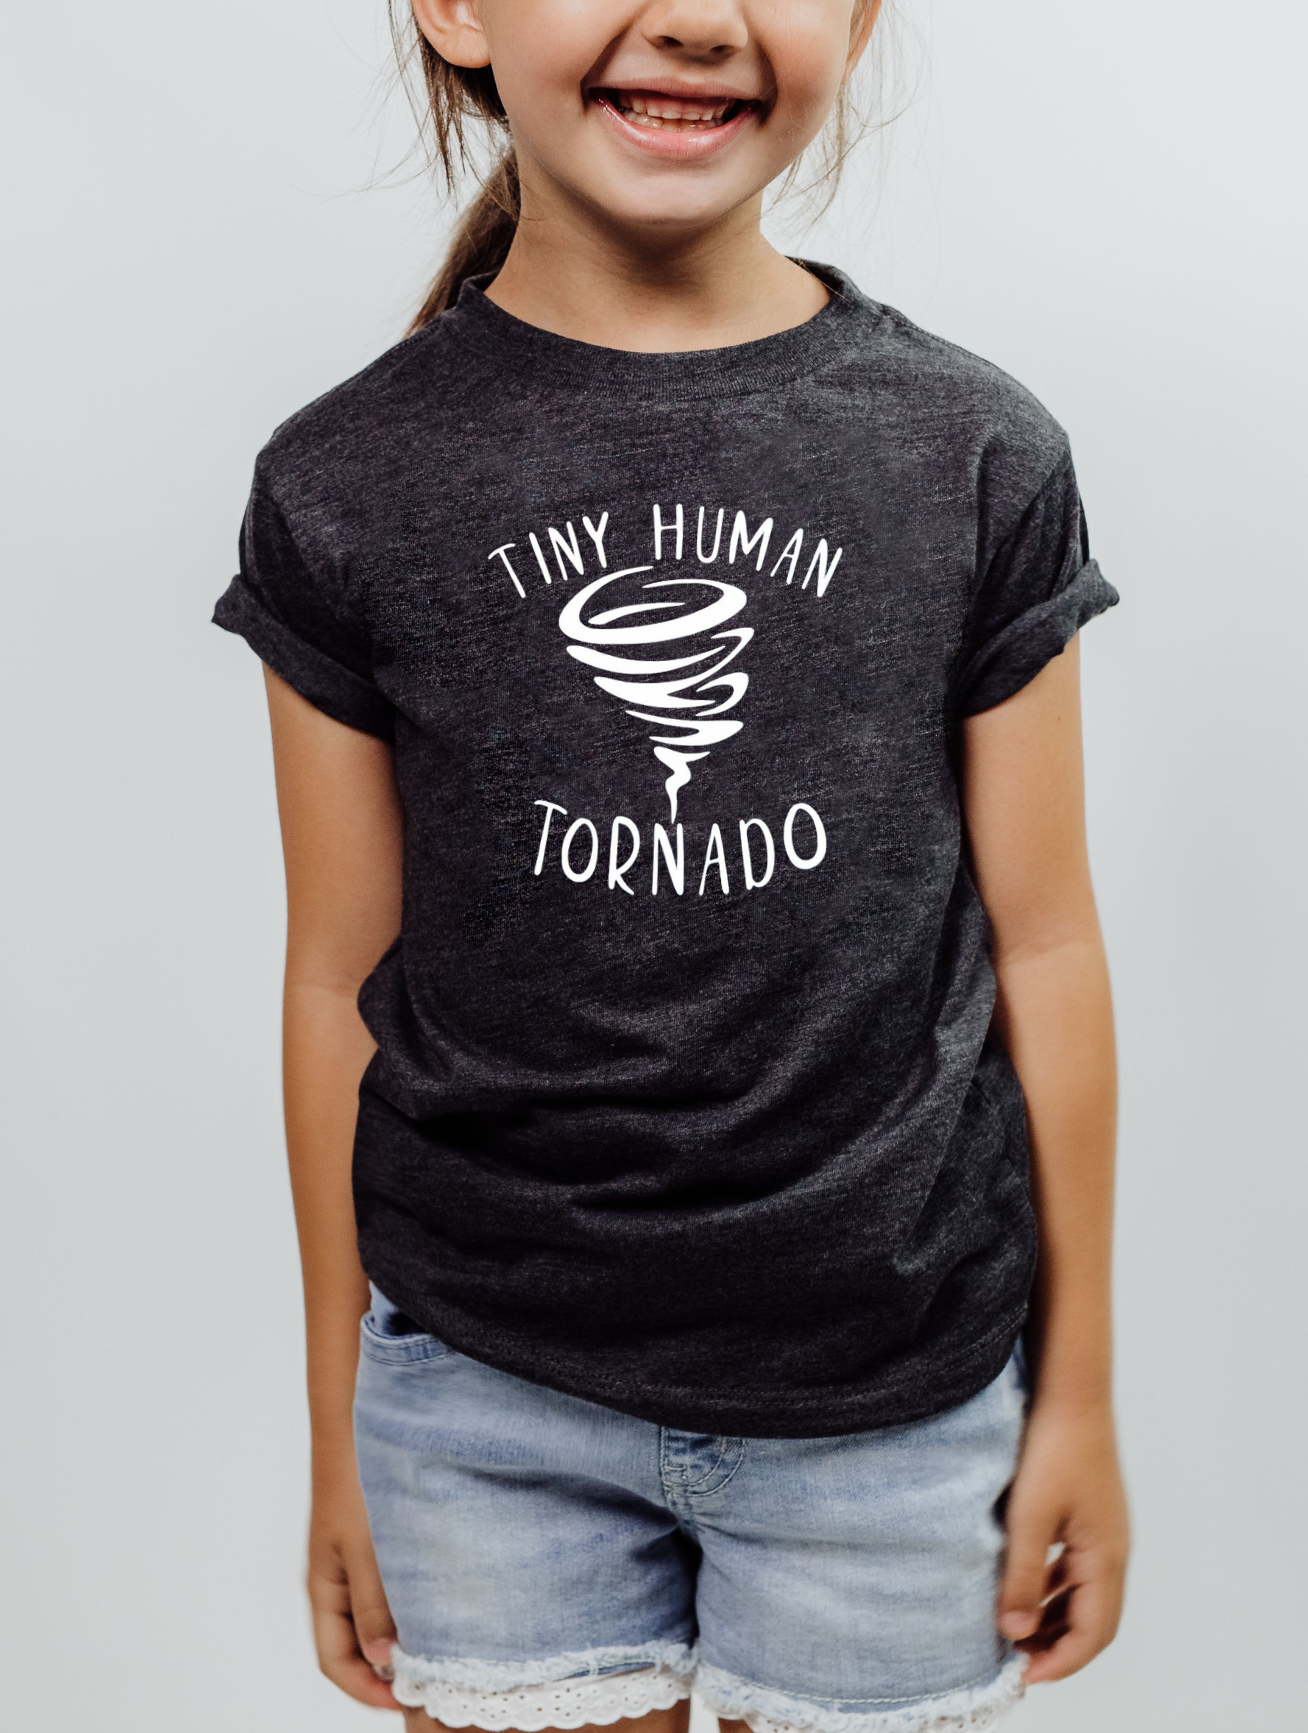 Tiny Human Tornado - Youth T-shirt